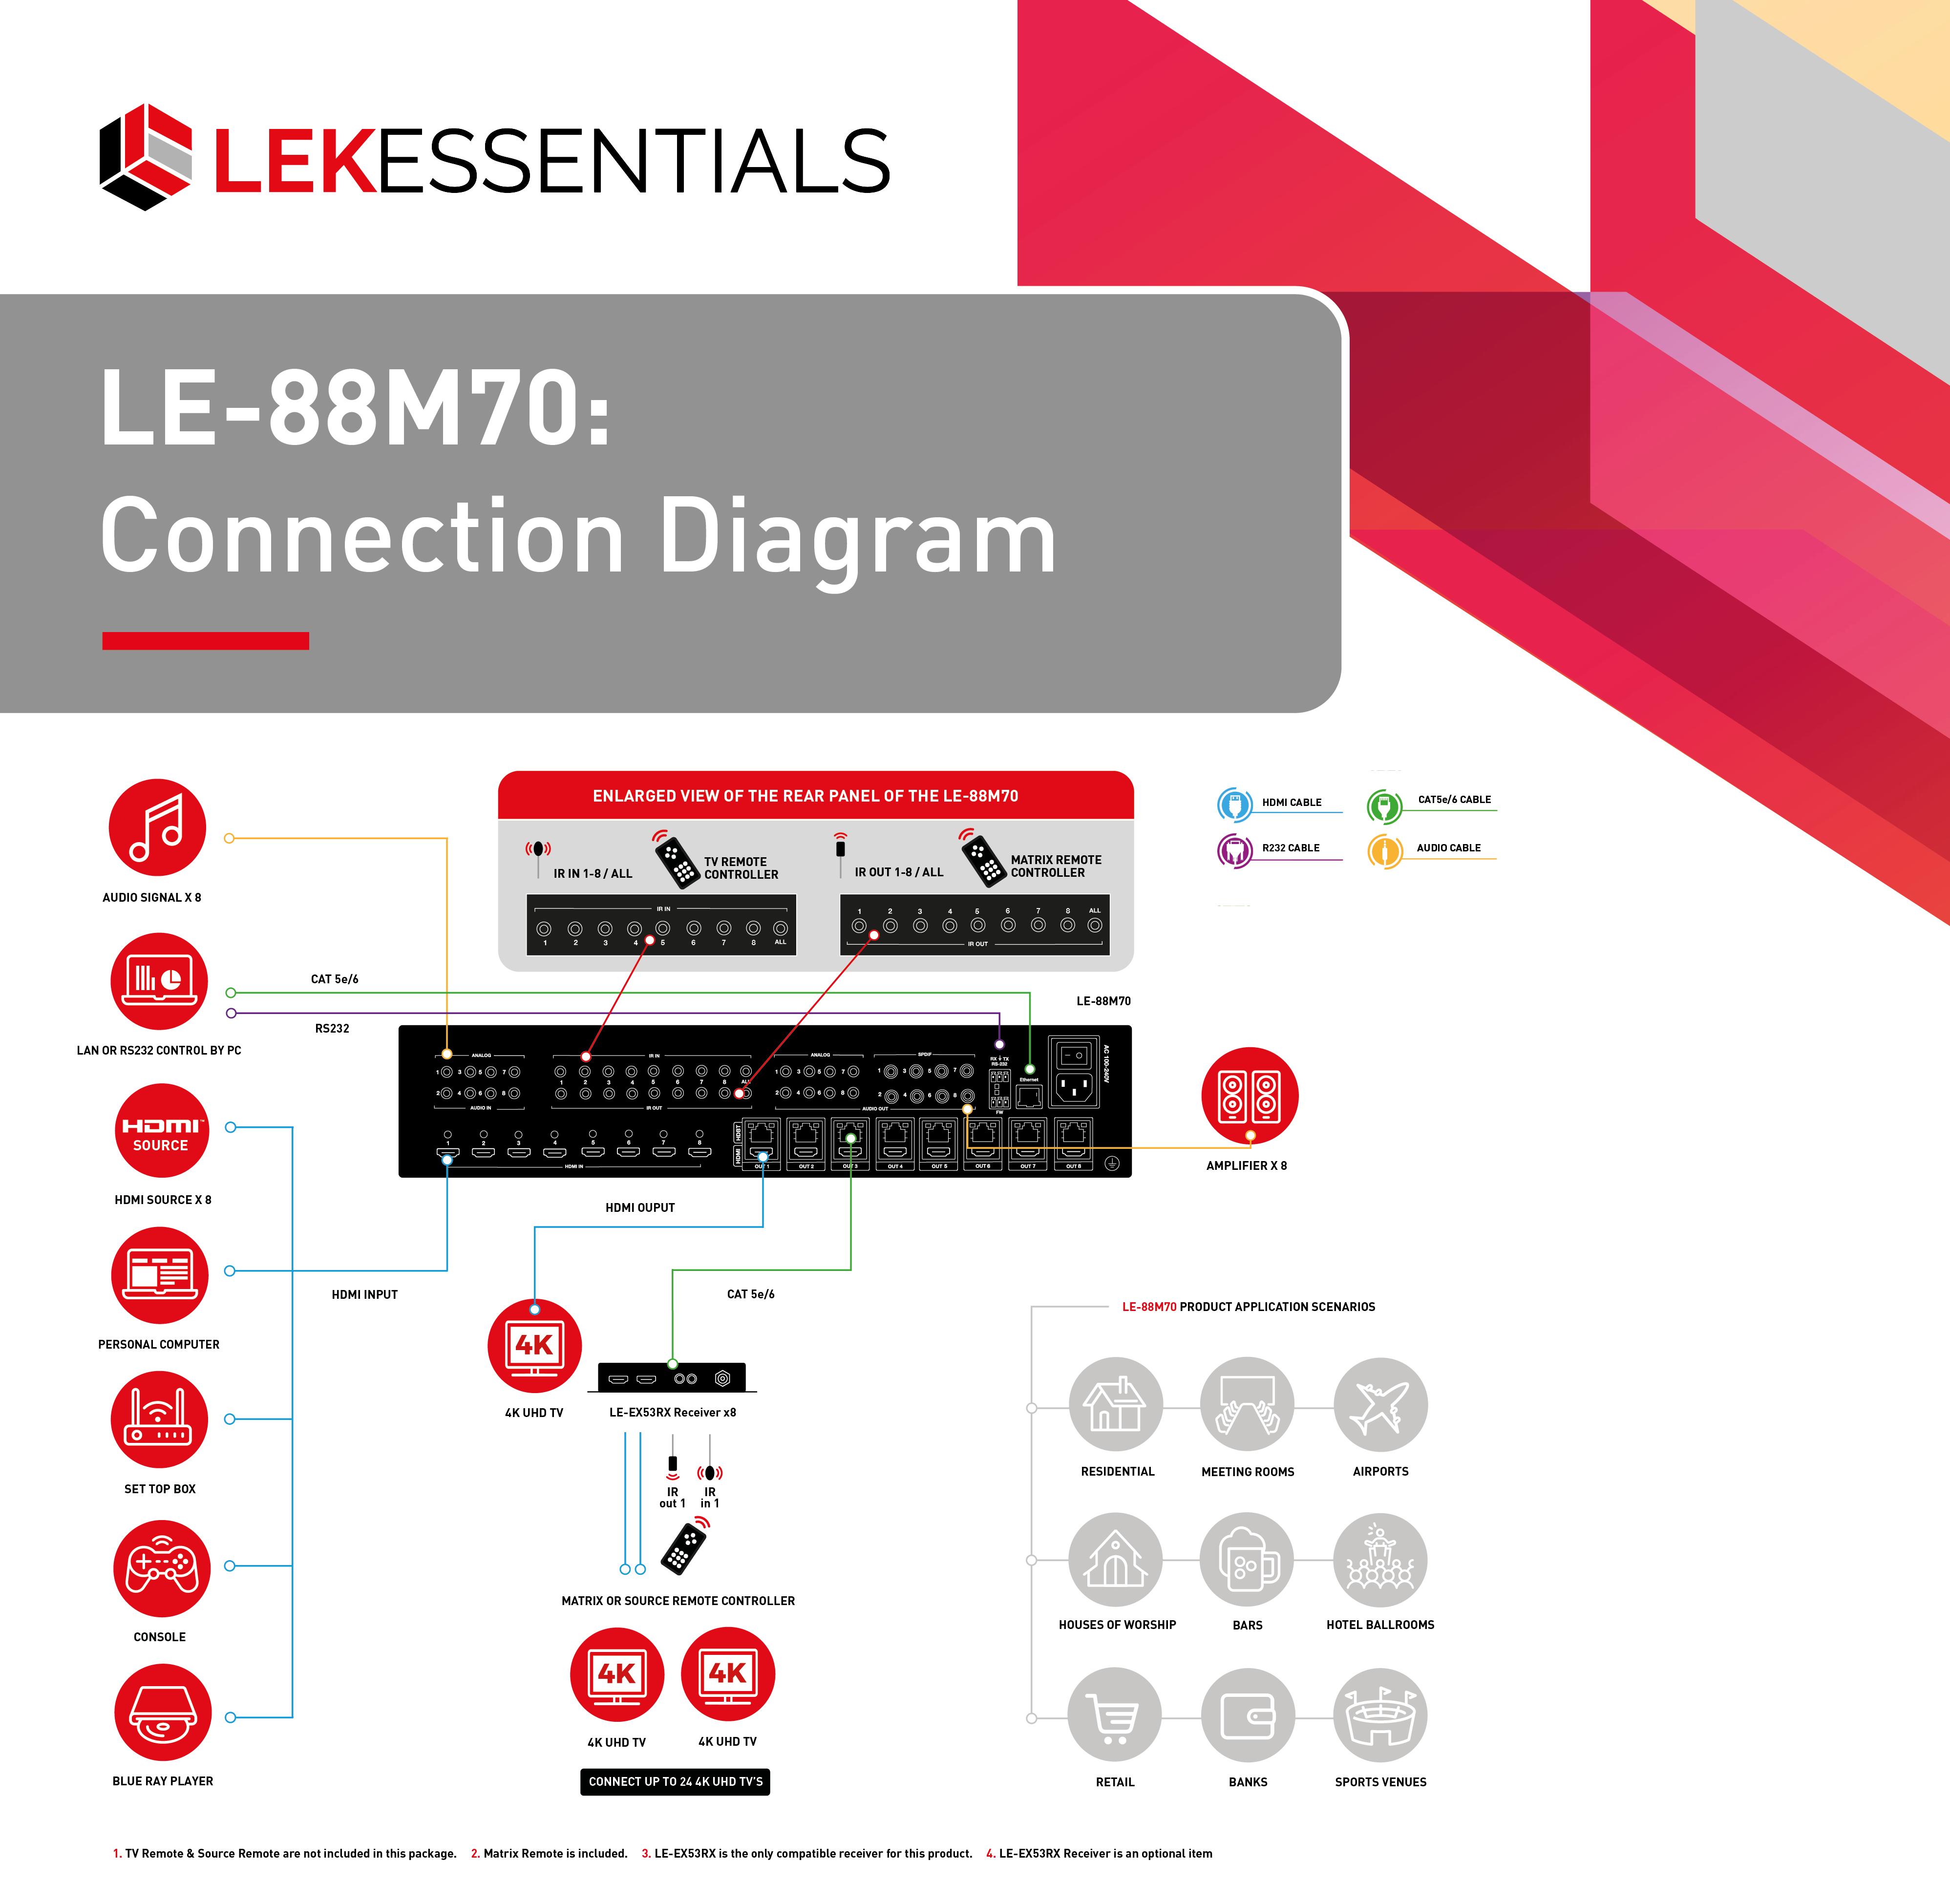 LE-88M70 Connection Diagram